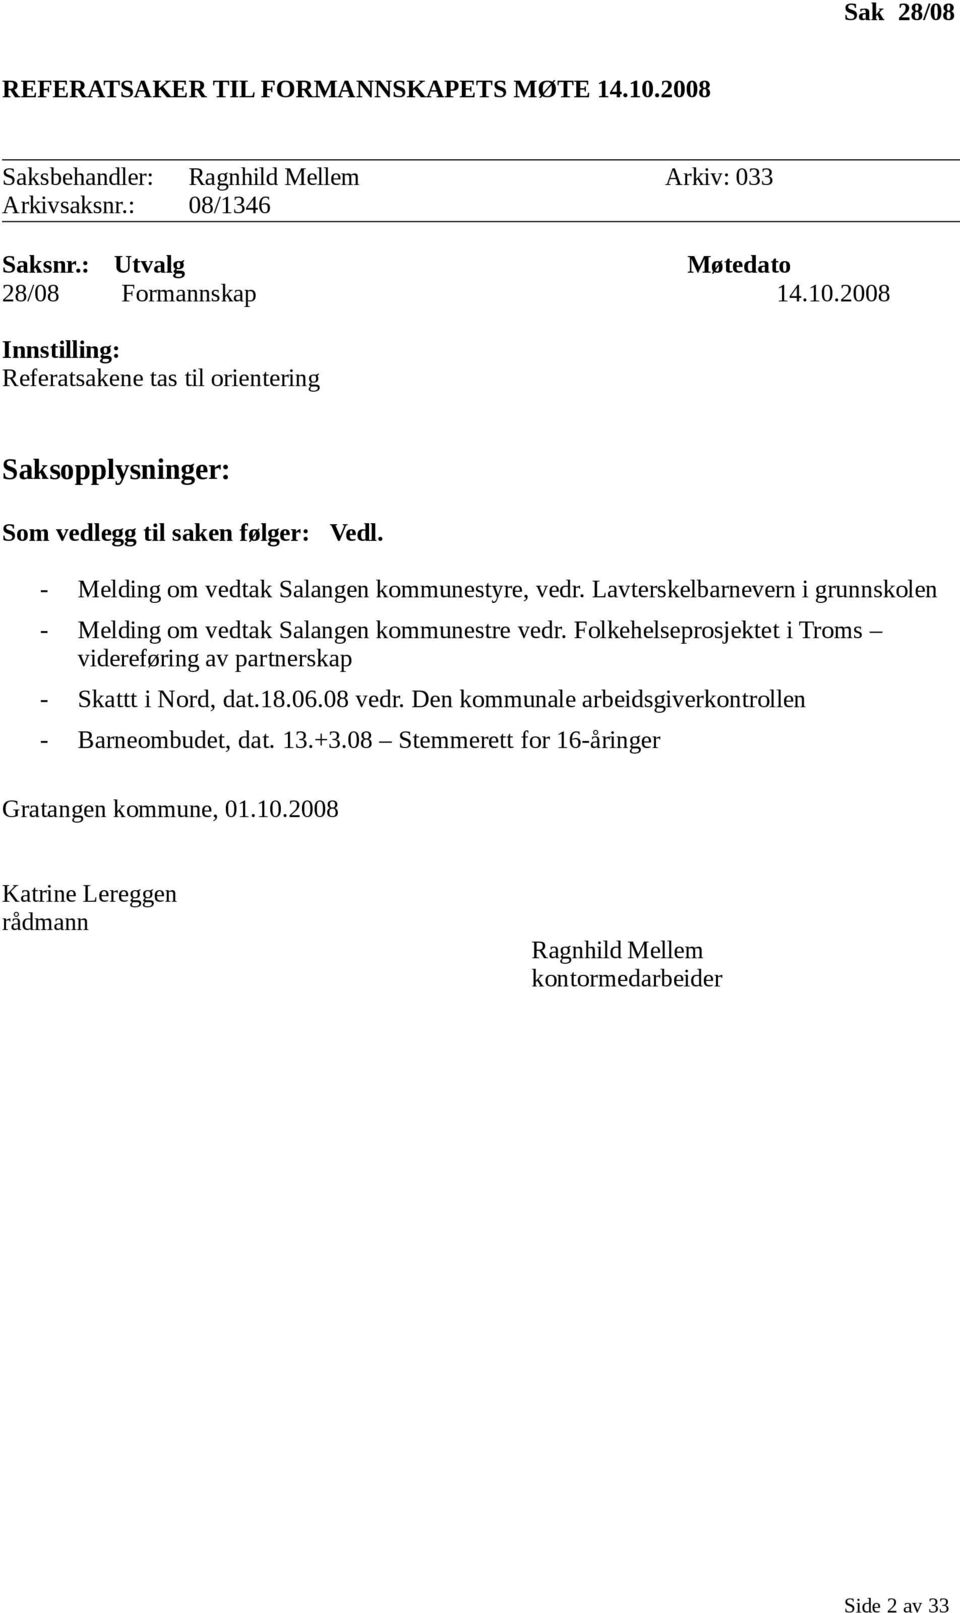 Folkehelseprosjektet i Troms videreføring av partnerskap - Skattt i Nord, dat.18.06.08 vedr. Den kommunale arbeidsgiverkontrollen - Barneombudet, dat. 13.+3.